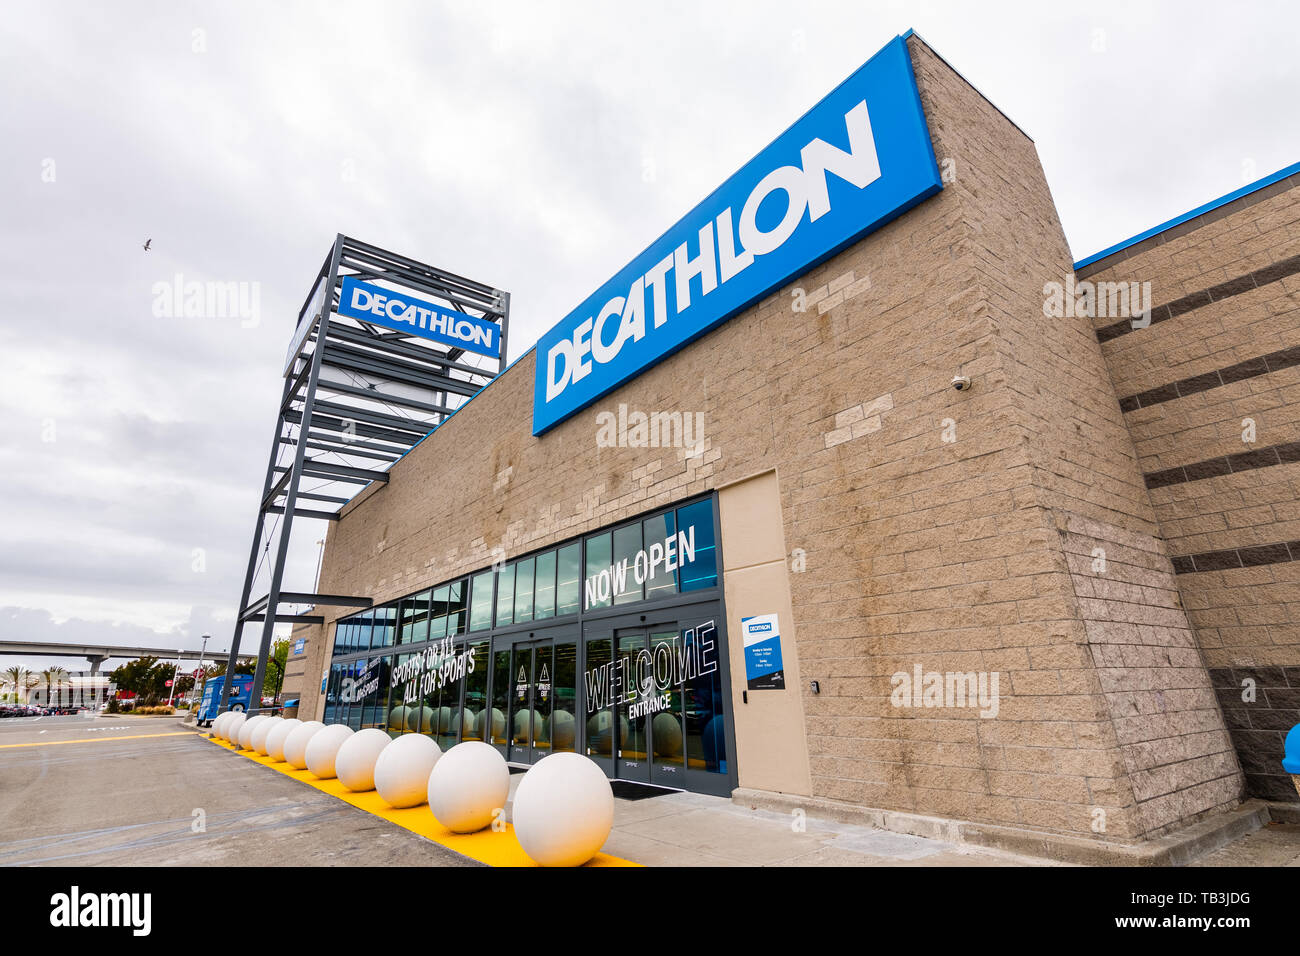 26 mai 2019 Emeryville / CA / USA - Vue extérieure de Decathlon Articles de sport magasin phare, le premier ouvert dans la région de la baie de San Francisco, près de Oakl Banque D'Images